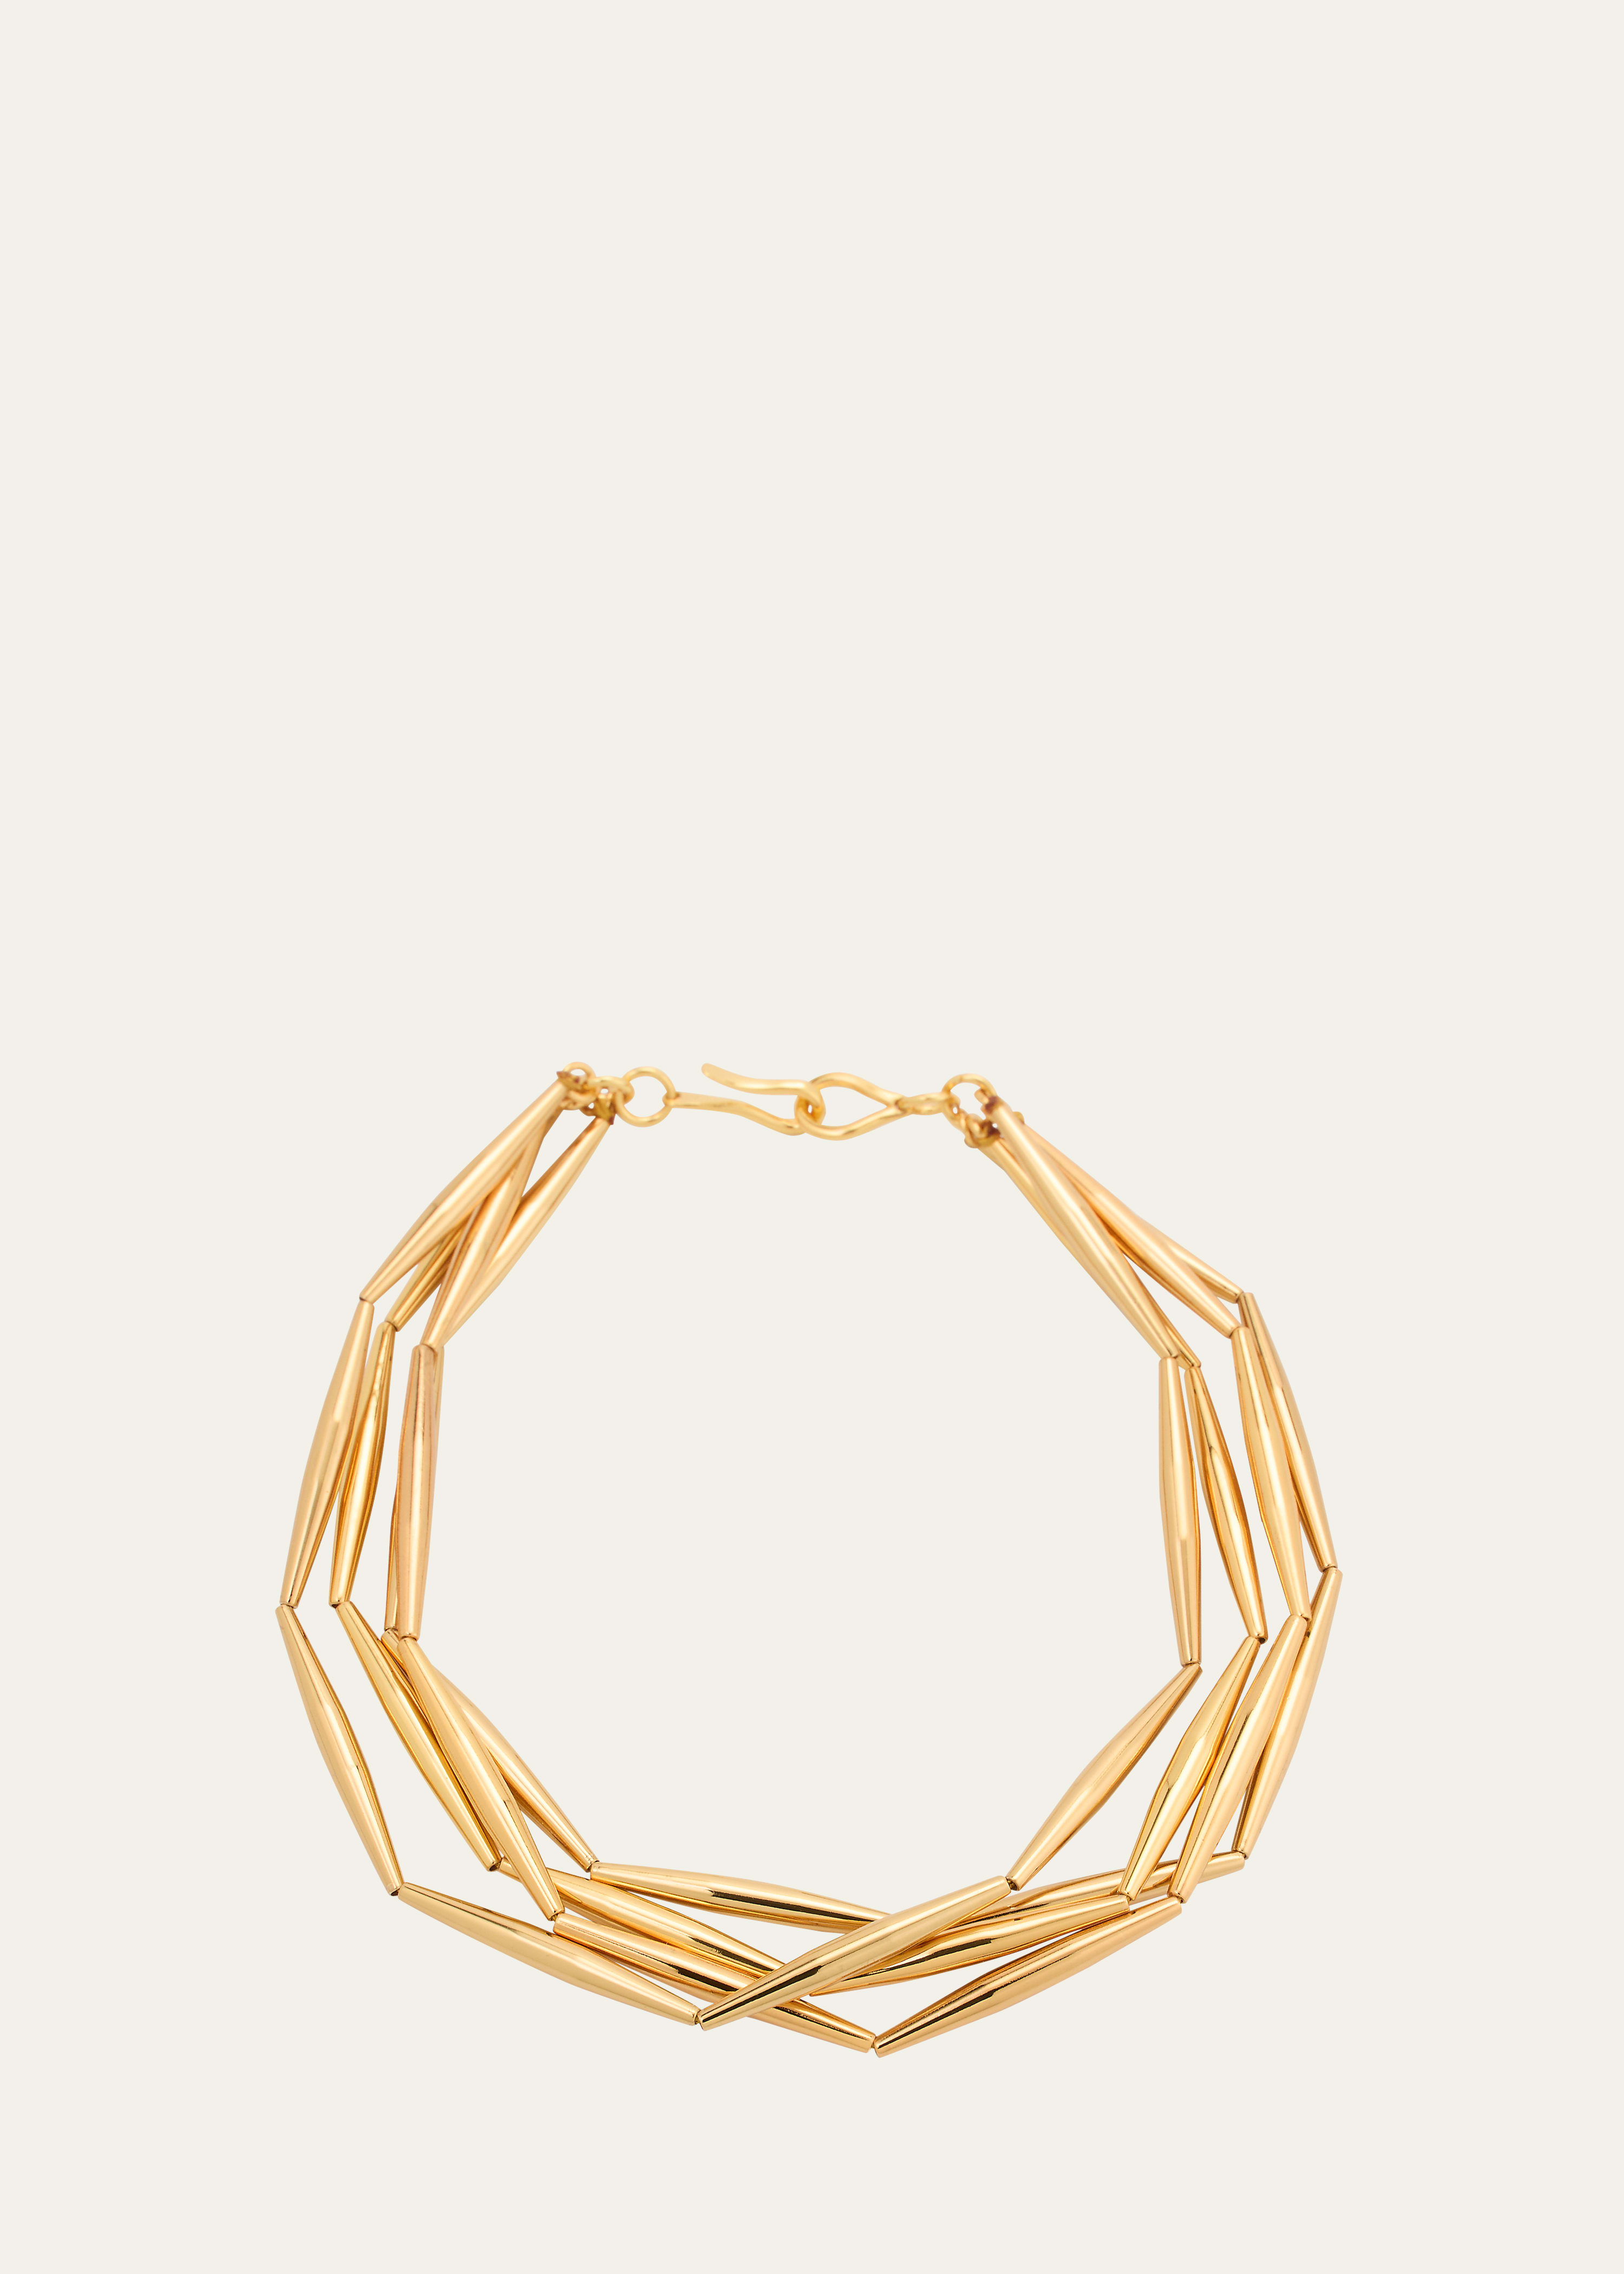 Helia 4 Row Necklace